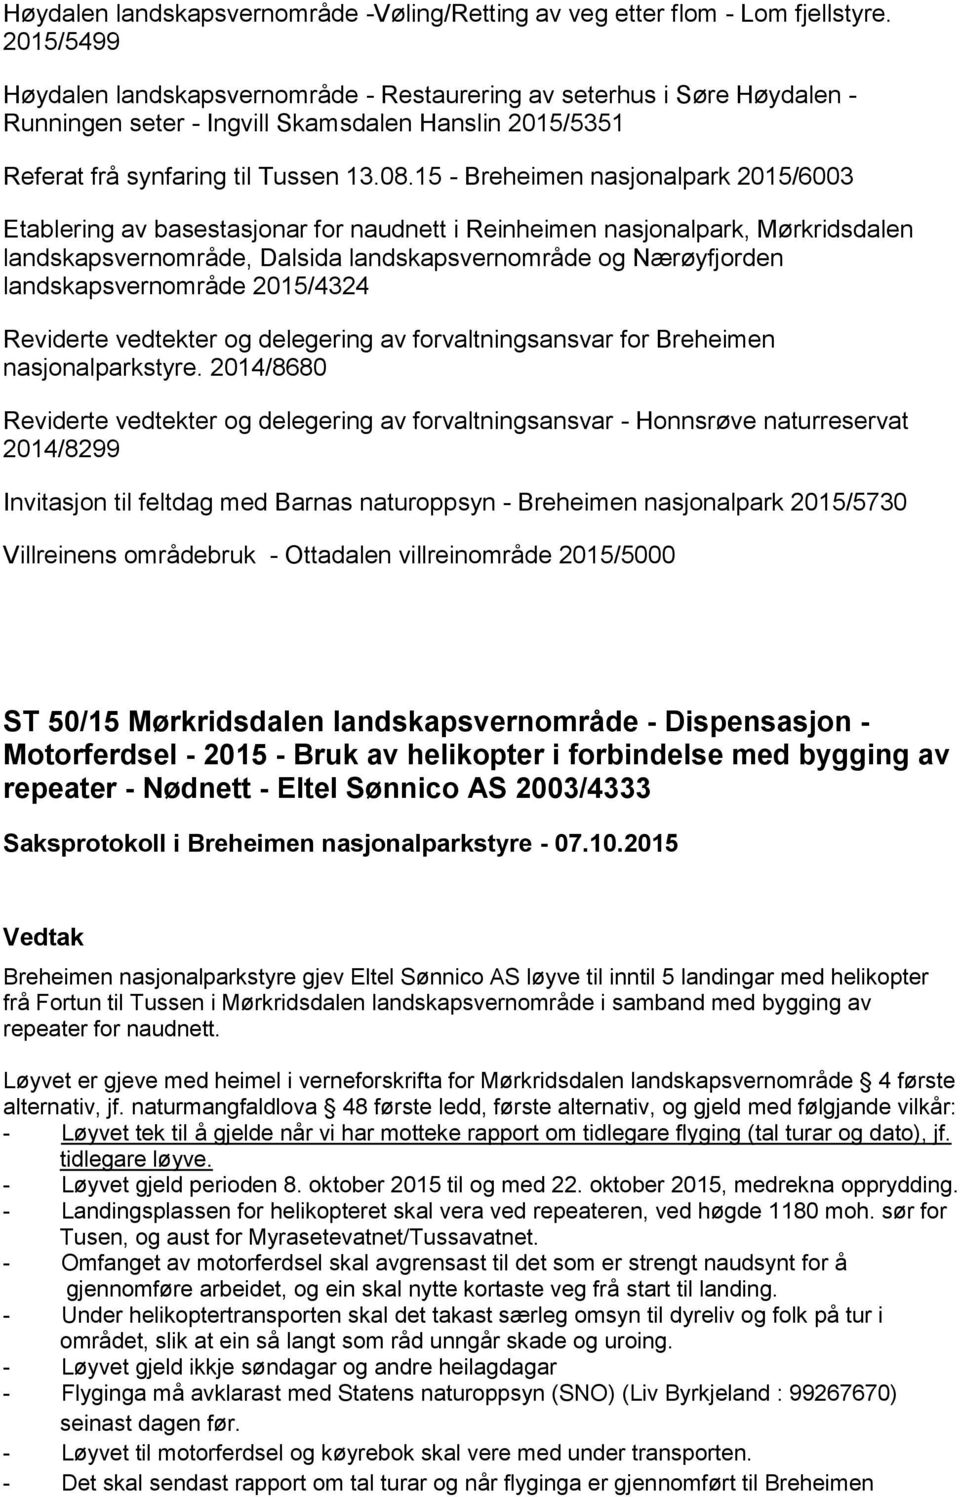 15 - Breheimen nasjonalpark 2015/6003 Etablering av basestasjonar for naudnett i Reinheimen nasjonalpark, Mørkridsdalen landskapsvernområde, Dalsida landskapsvernområde og Nærøyfjorden